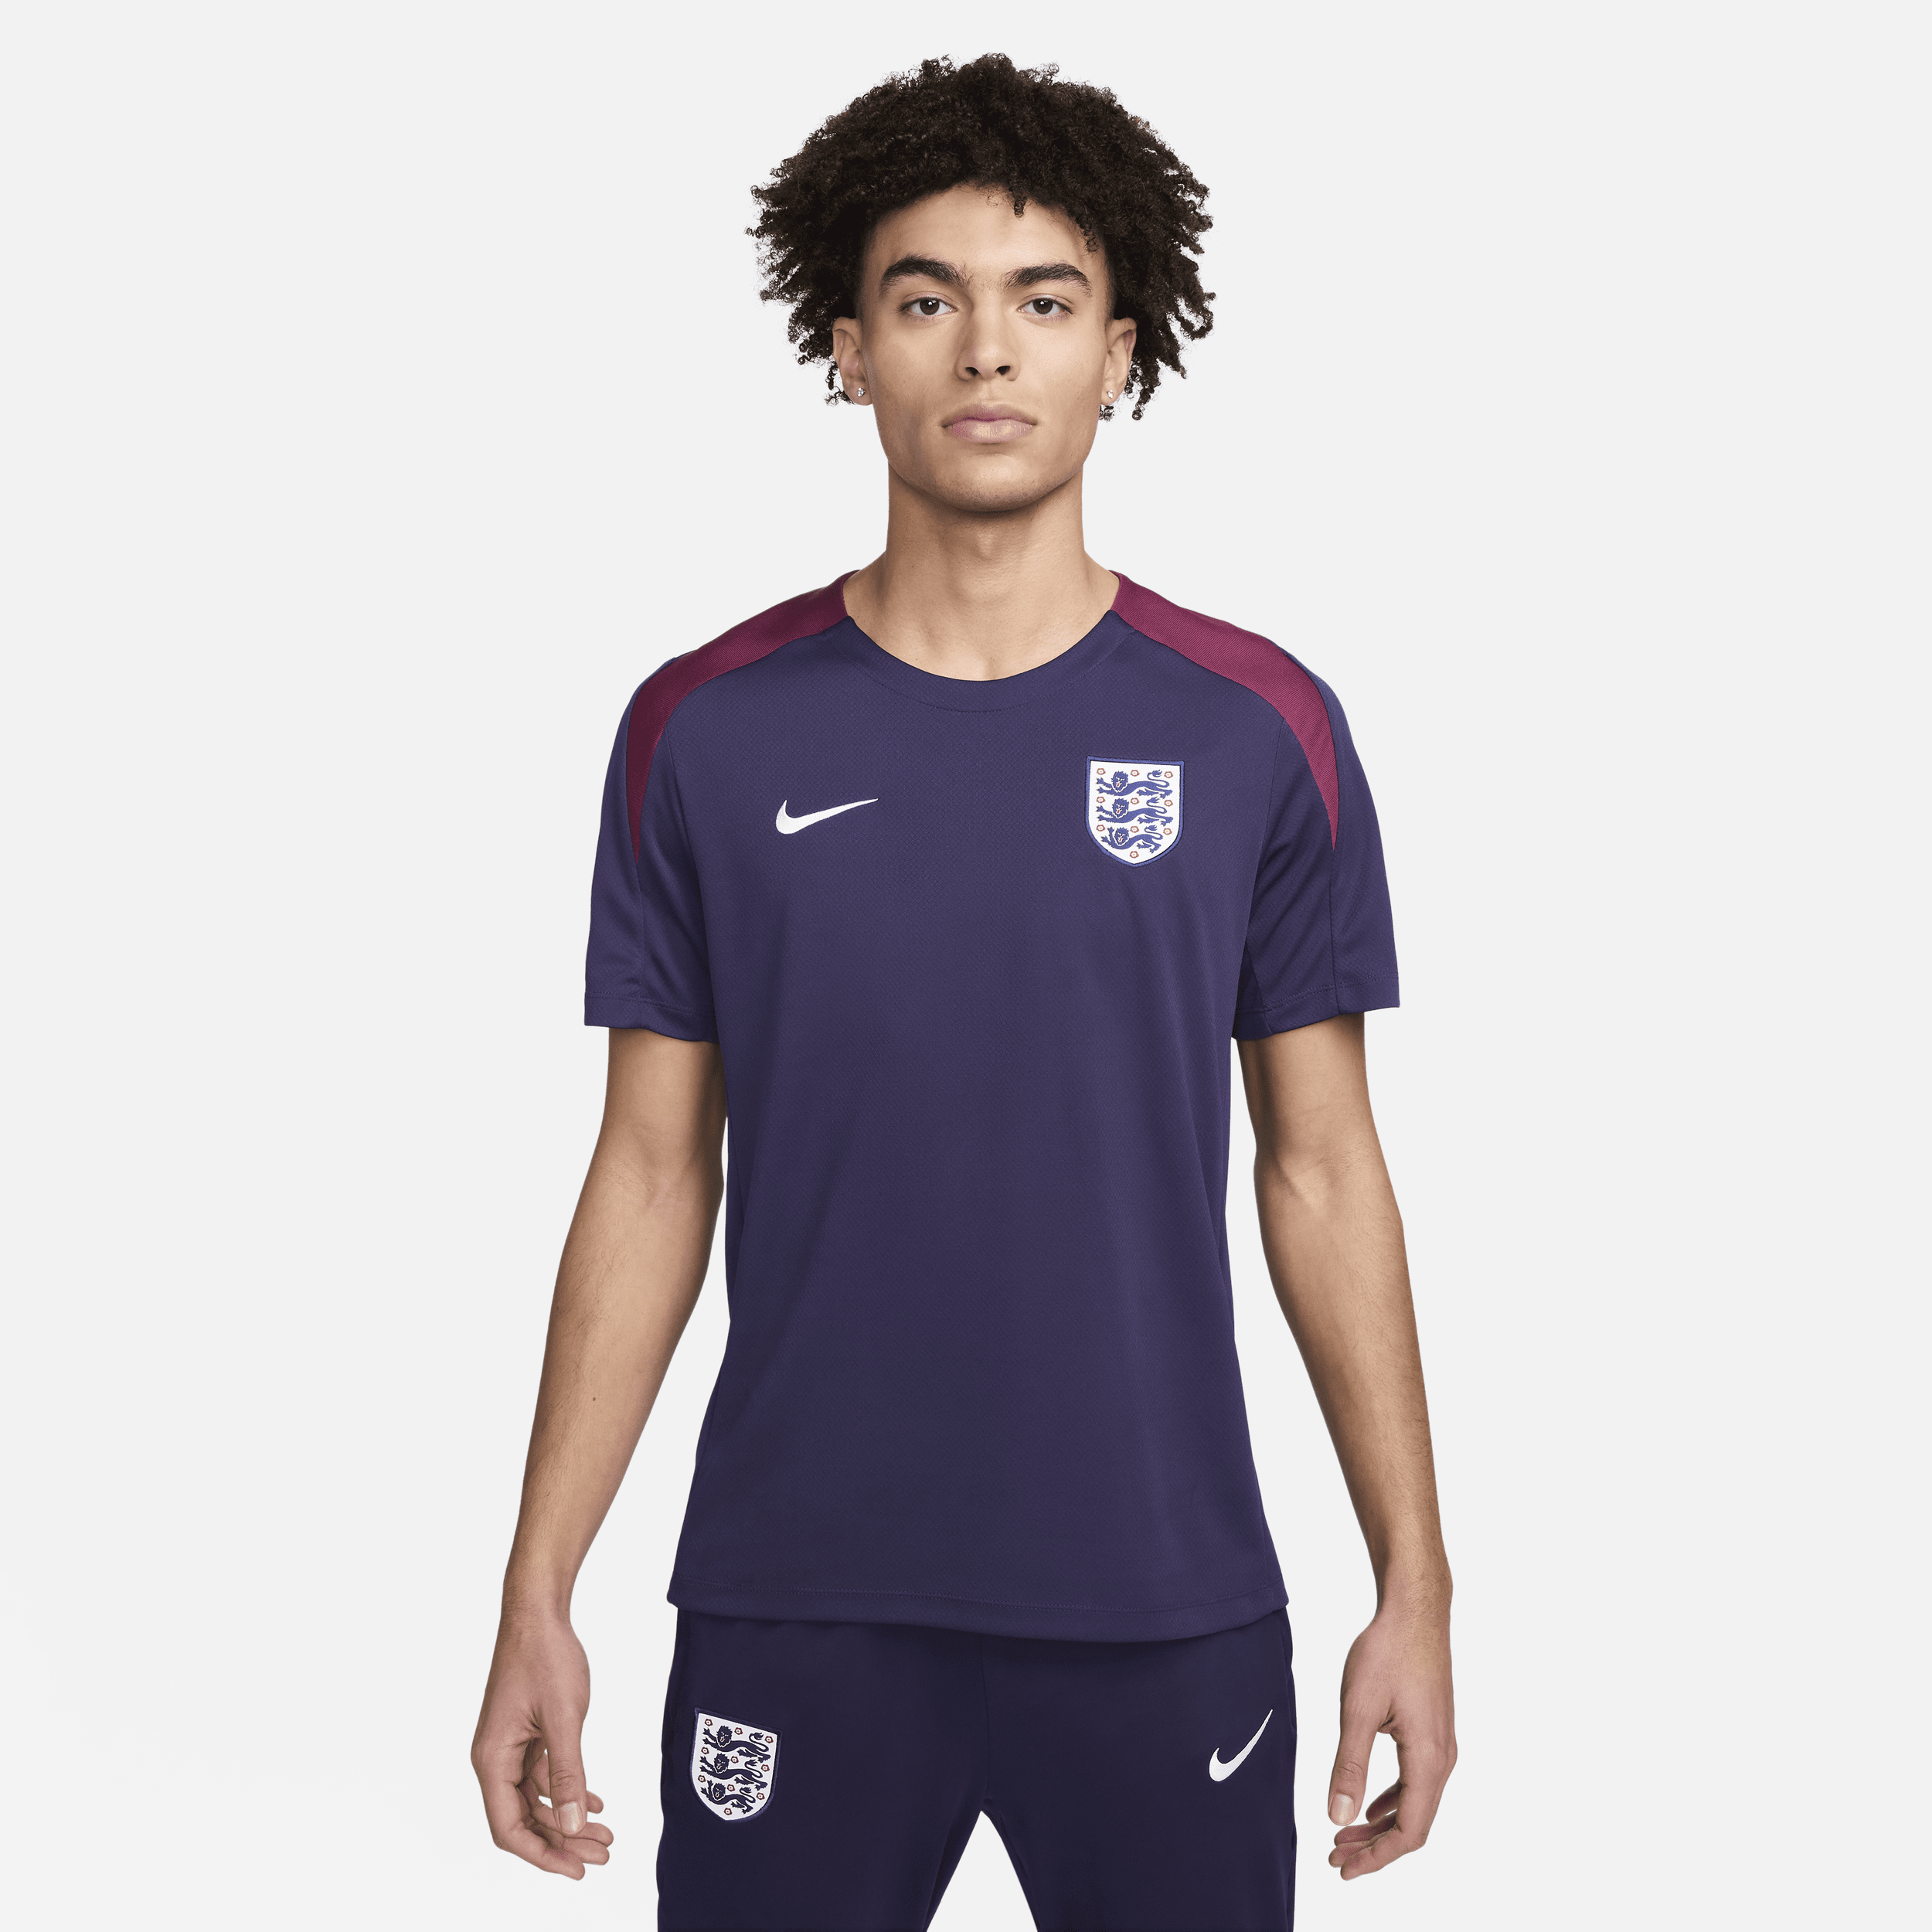 Engeland Strike Nike Dri-FIT knit voetbaltop met korte mouwen voor heren - Paars